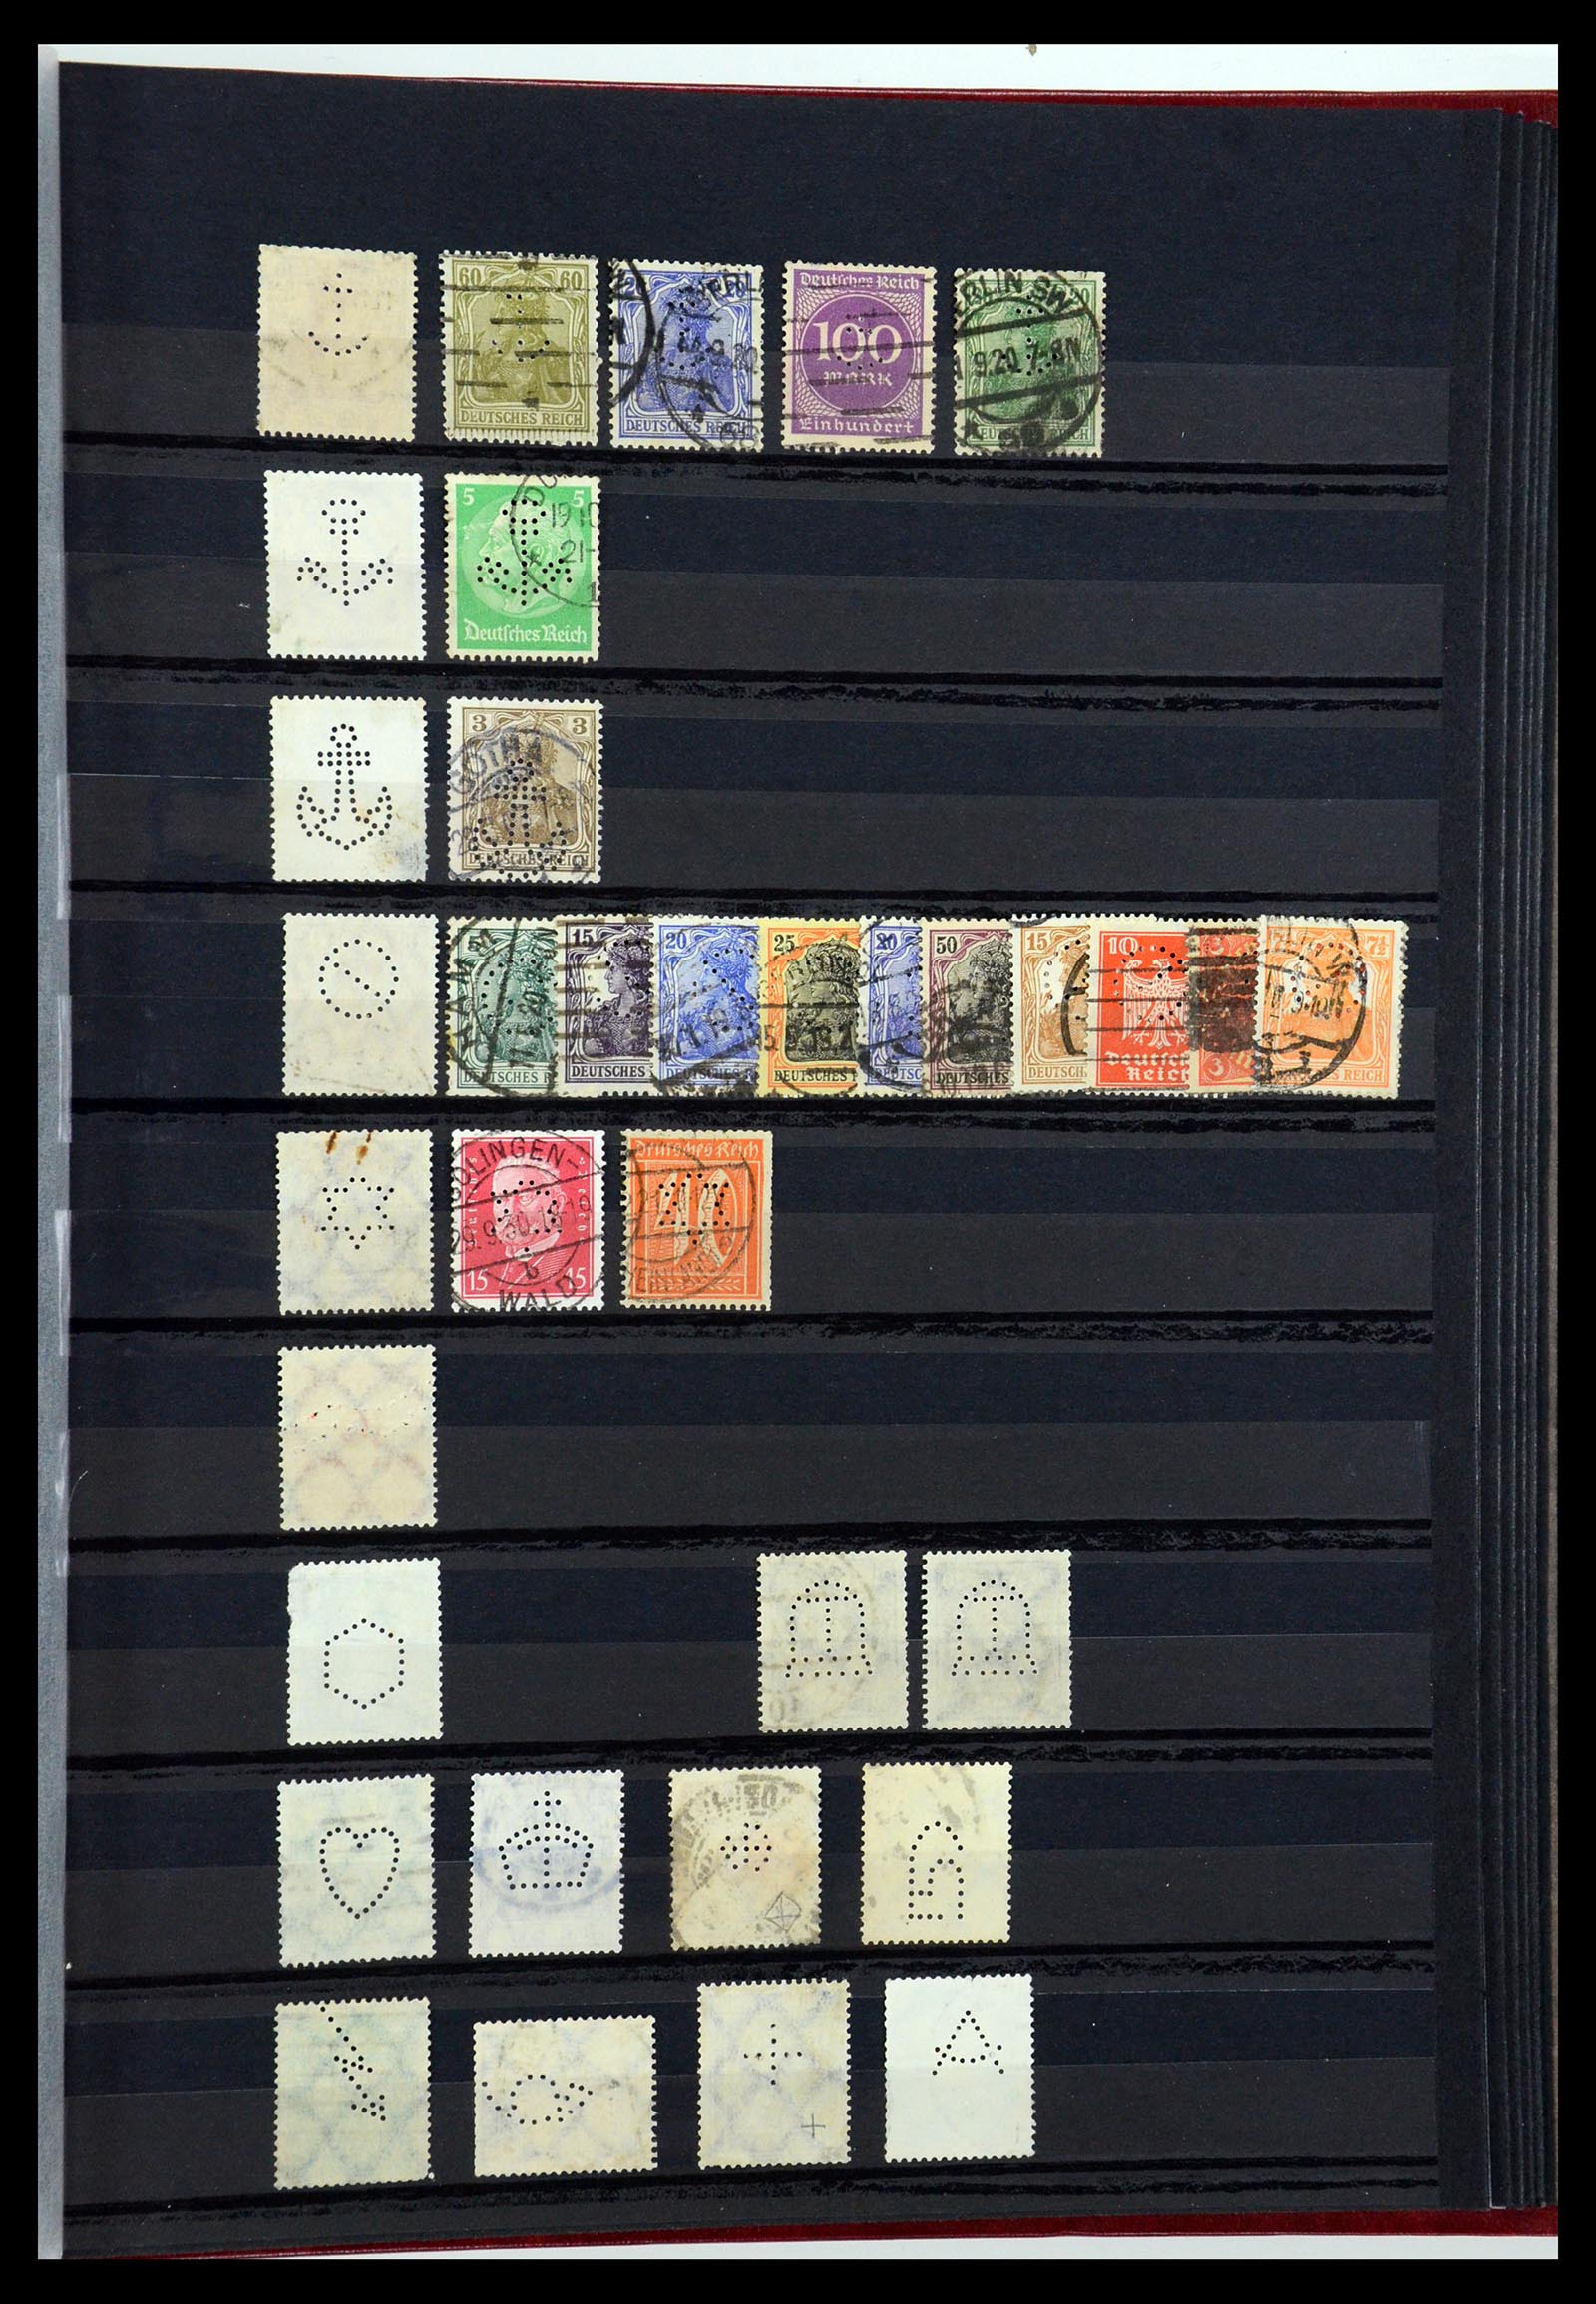 36405 350 - Stamp collection 36405 German Reich perfins 1880-1945.